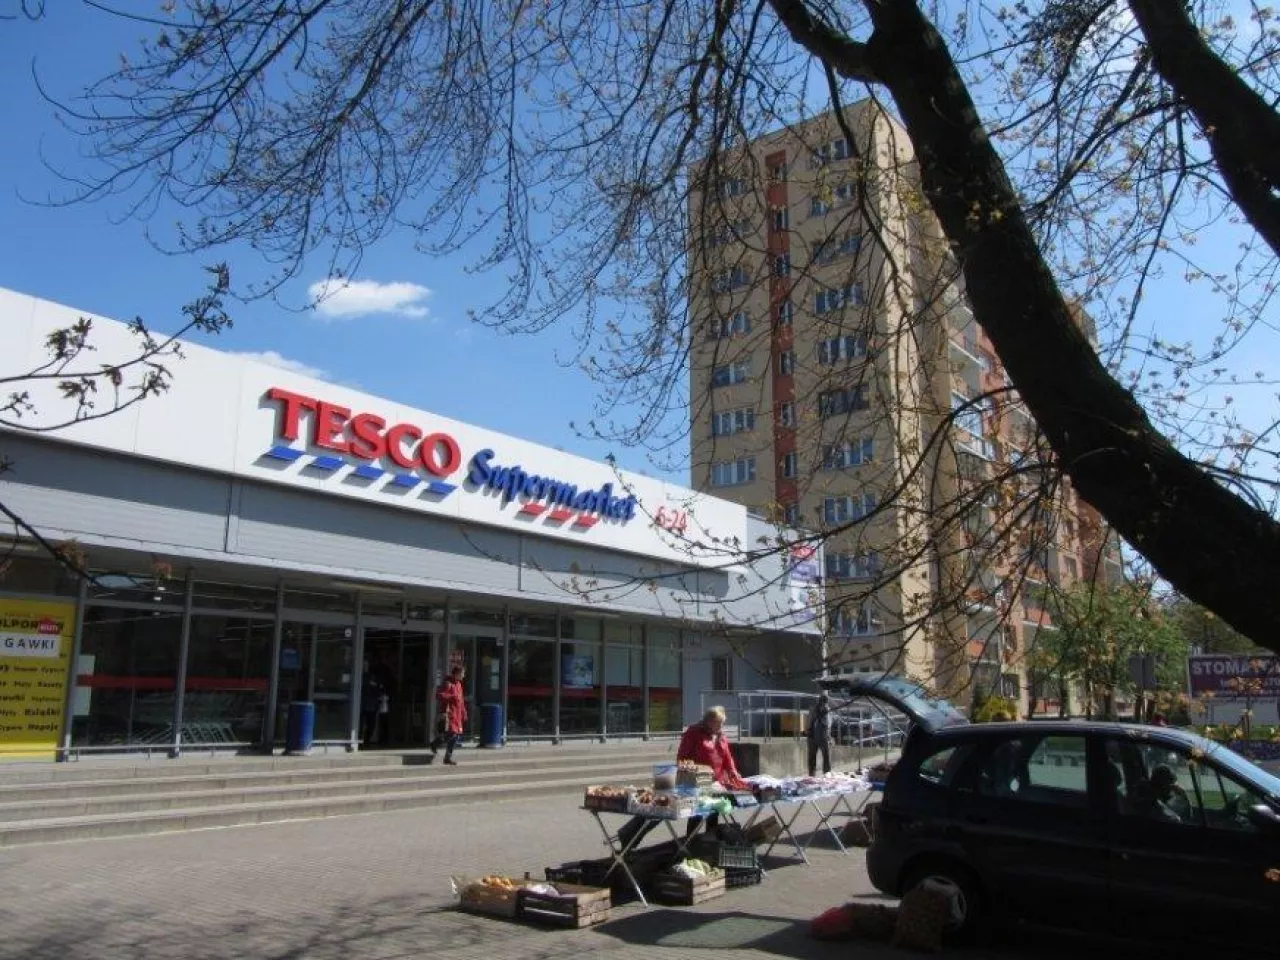 Tesco Supermarket w Łodzi przy ul. Retkińskiej, źródło: Archiwum Wiadomości Handlowych (fot. Konrad Kaszuba)